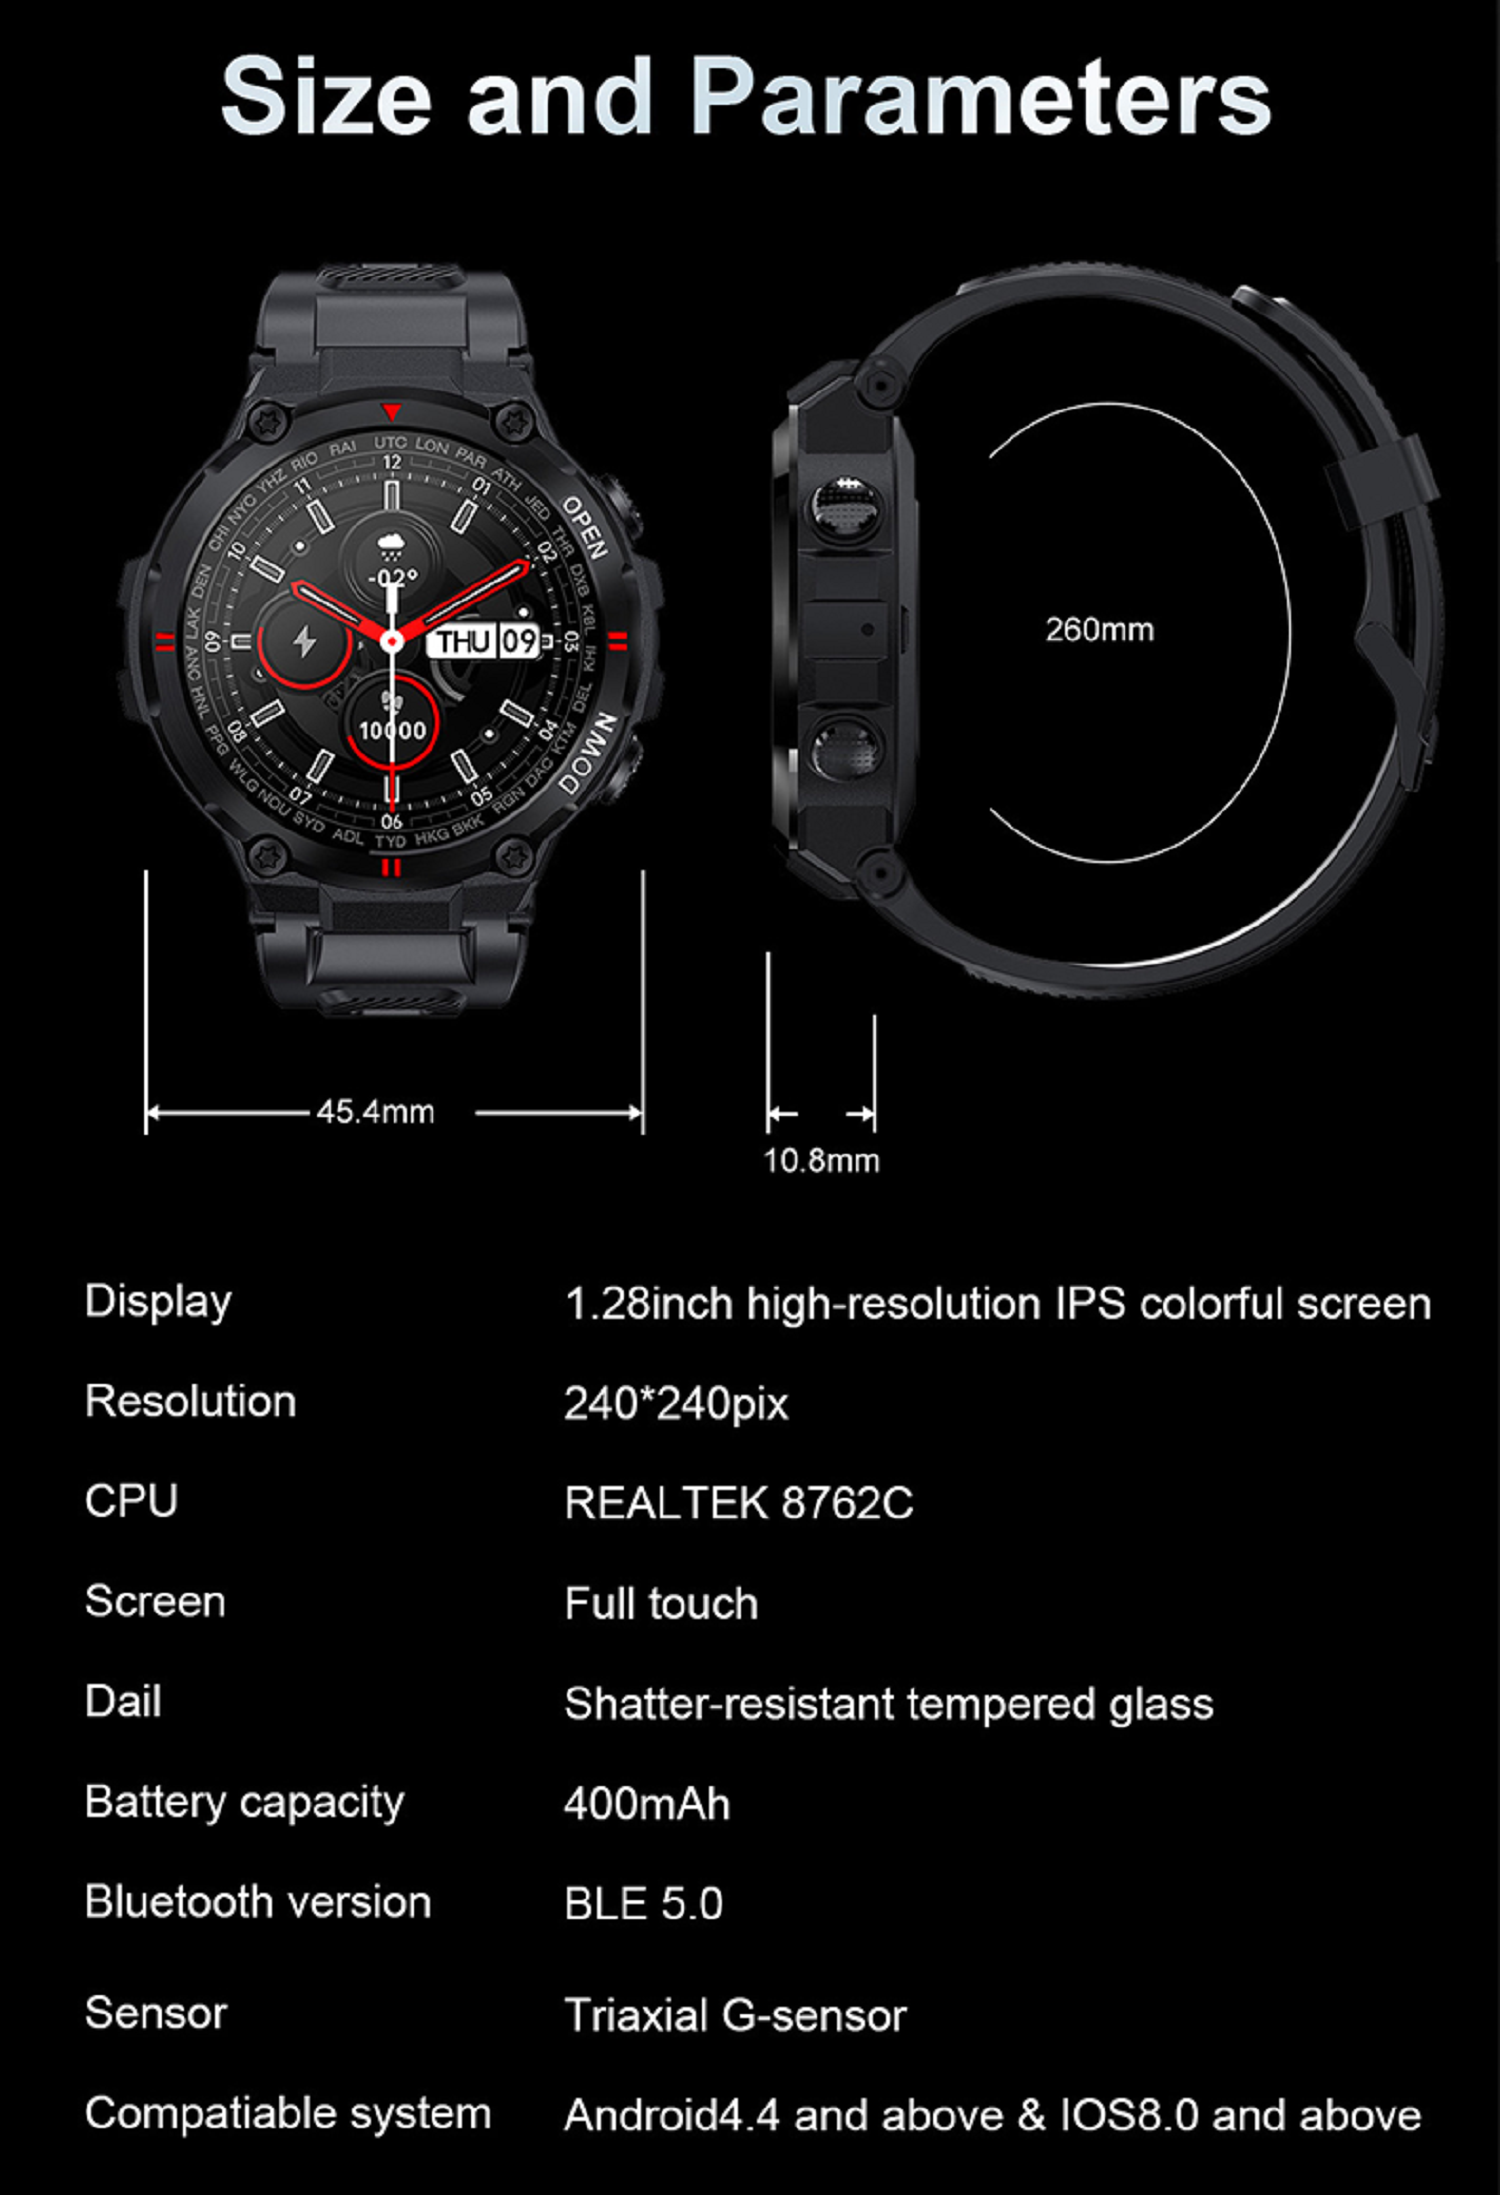 Smartwatch KAREN M Grau Silikon, Grau K22